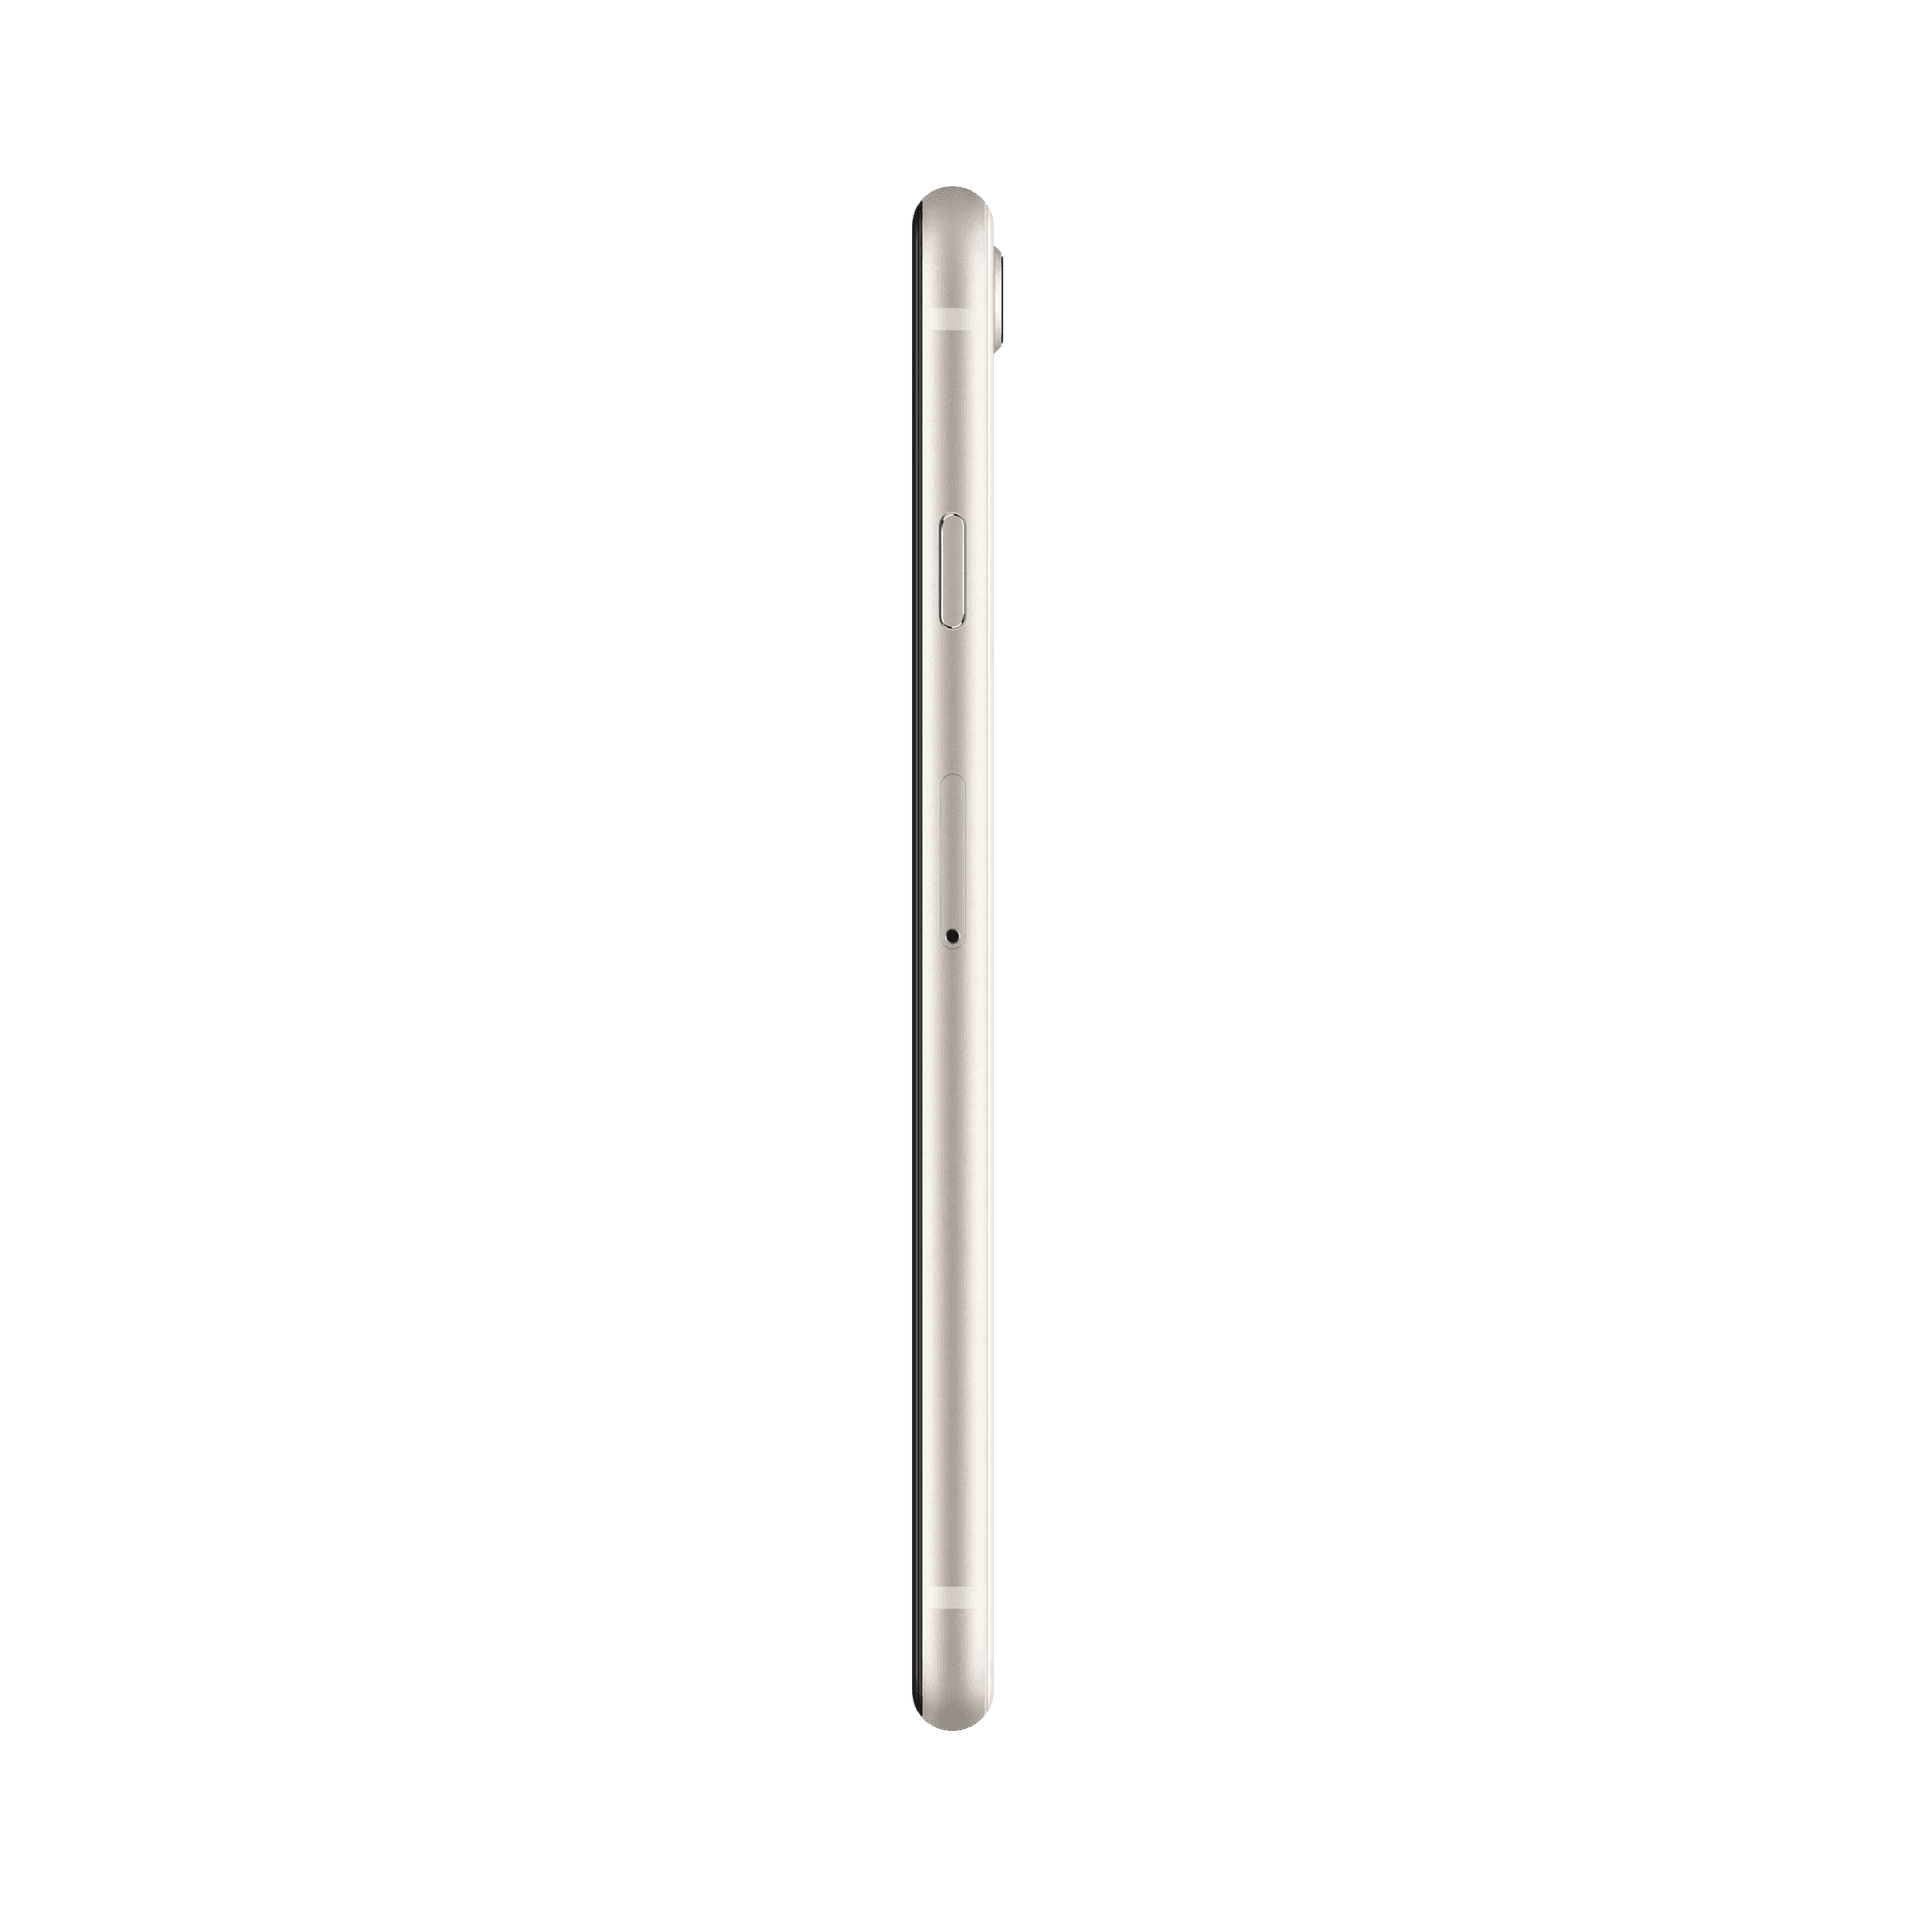 Apple iPhone SE 2020 - 64 GB - Beyaz